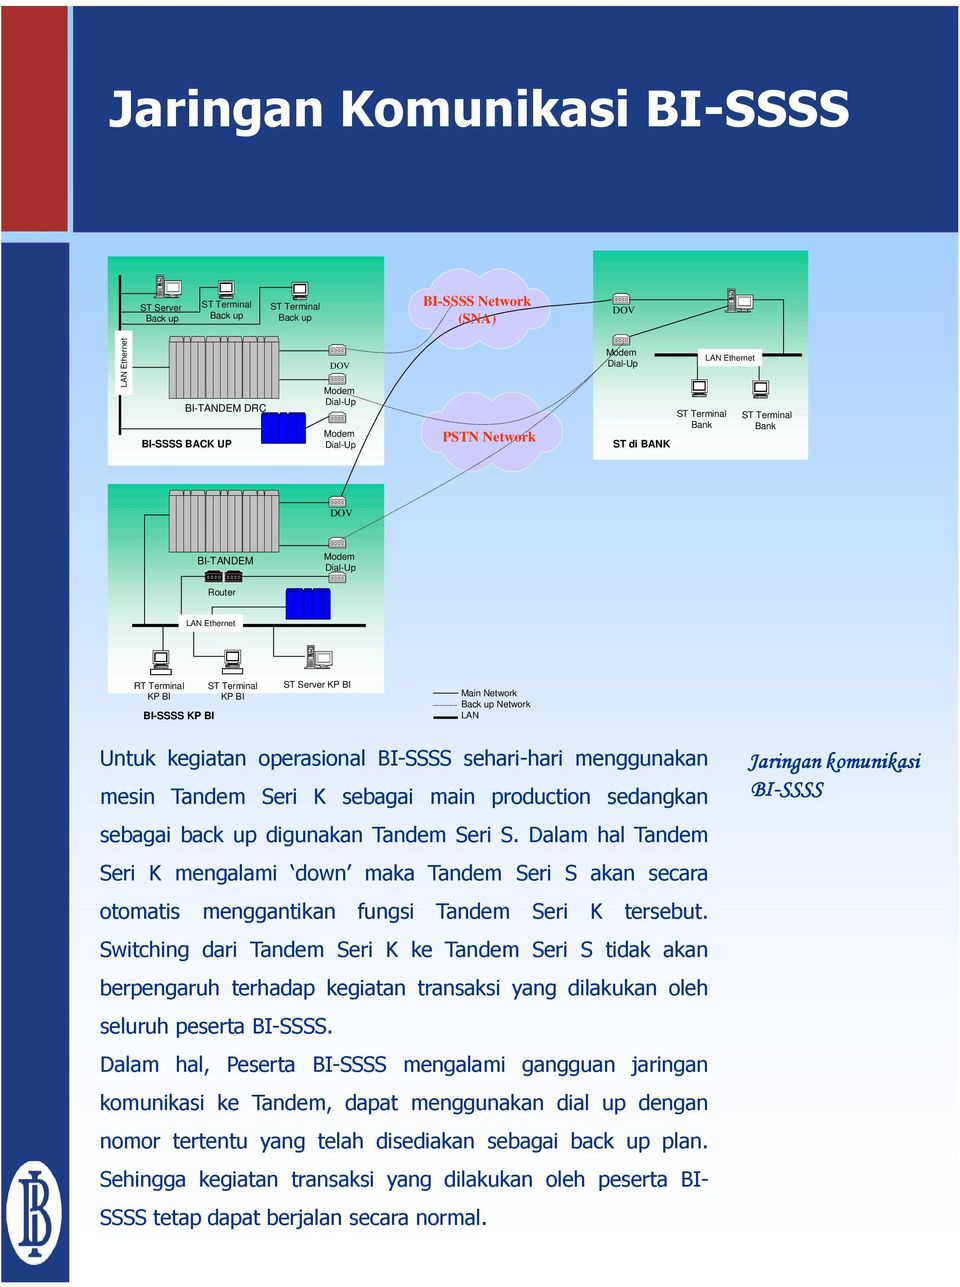 Back up Network LAN Untuk kegiatan operasional BI-SSSS sehari-hari menggunakan mesin Tandem Seri K sebagai main production sedangkan sebagai back up digunakan Tandem Seri S.